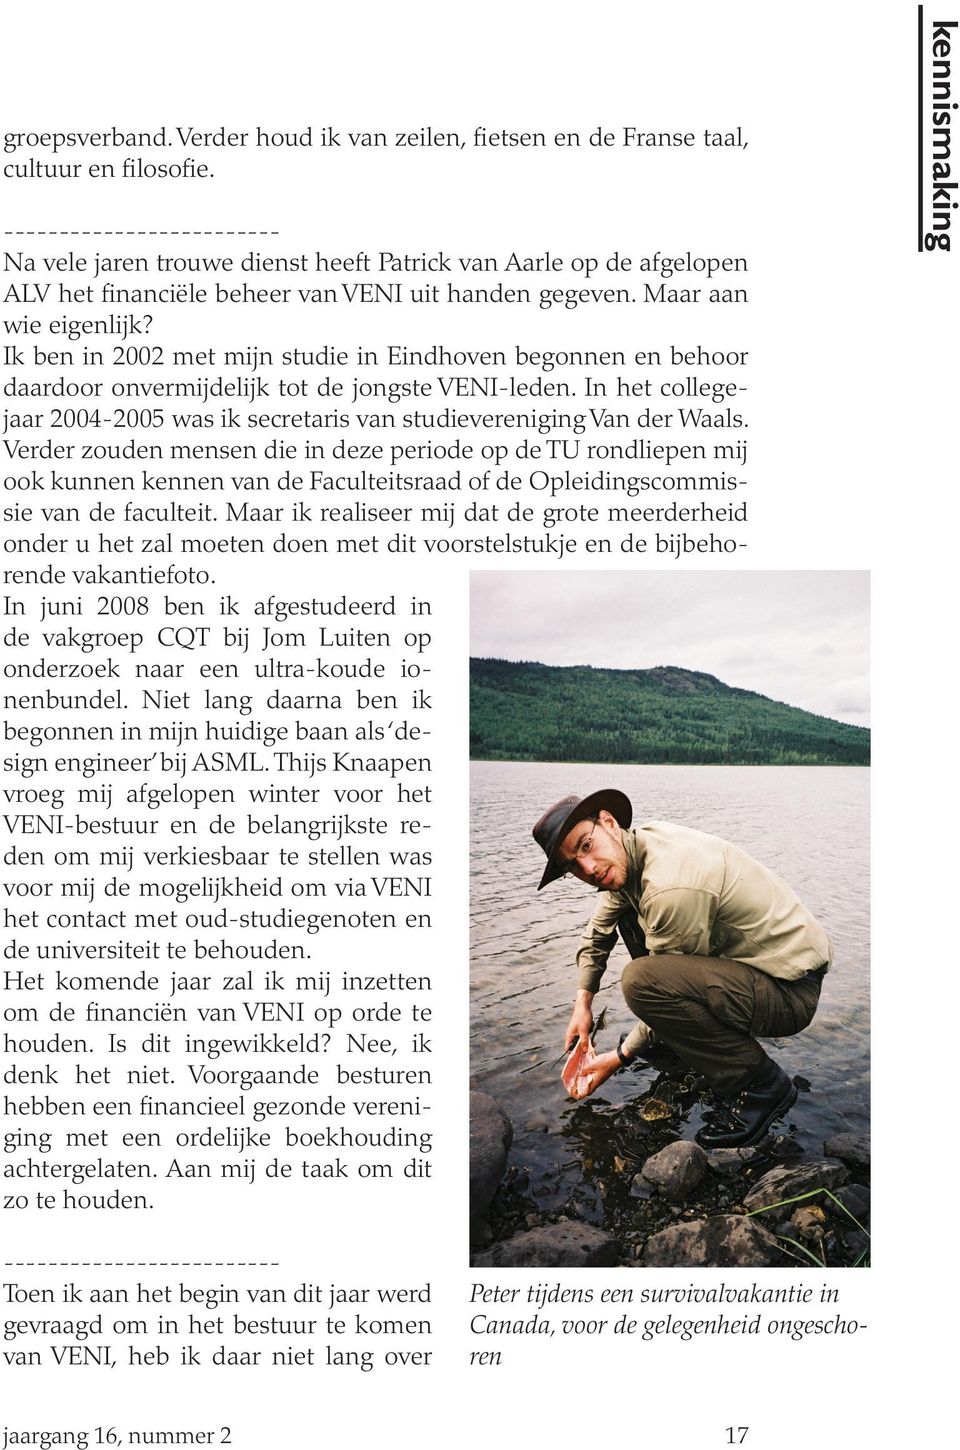 Ik ben in 2002 met mijn studie in Eindhoven begonnen en behoor daardoor onvermijdelijk tot de jongste VENI-leden. In het collegejaar 2004-2005 was ik secretaris van studievereniging Van der Waals.